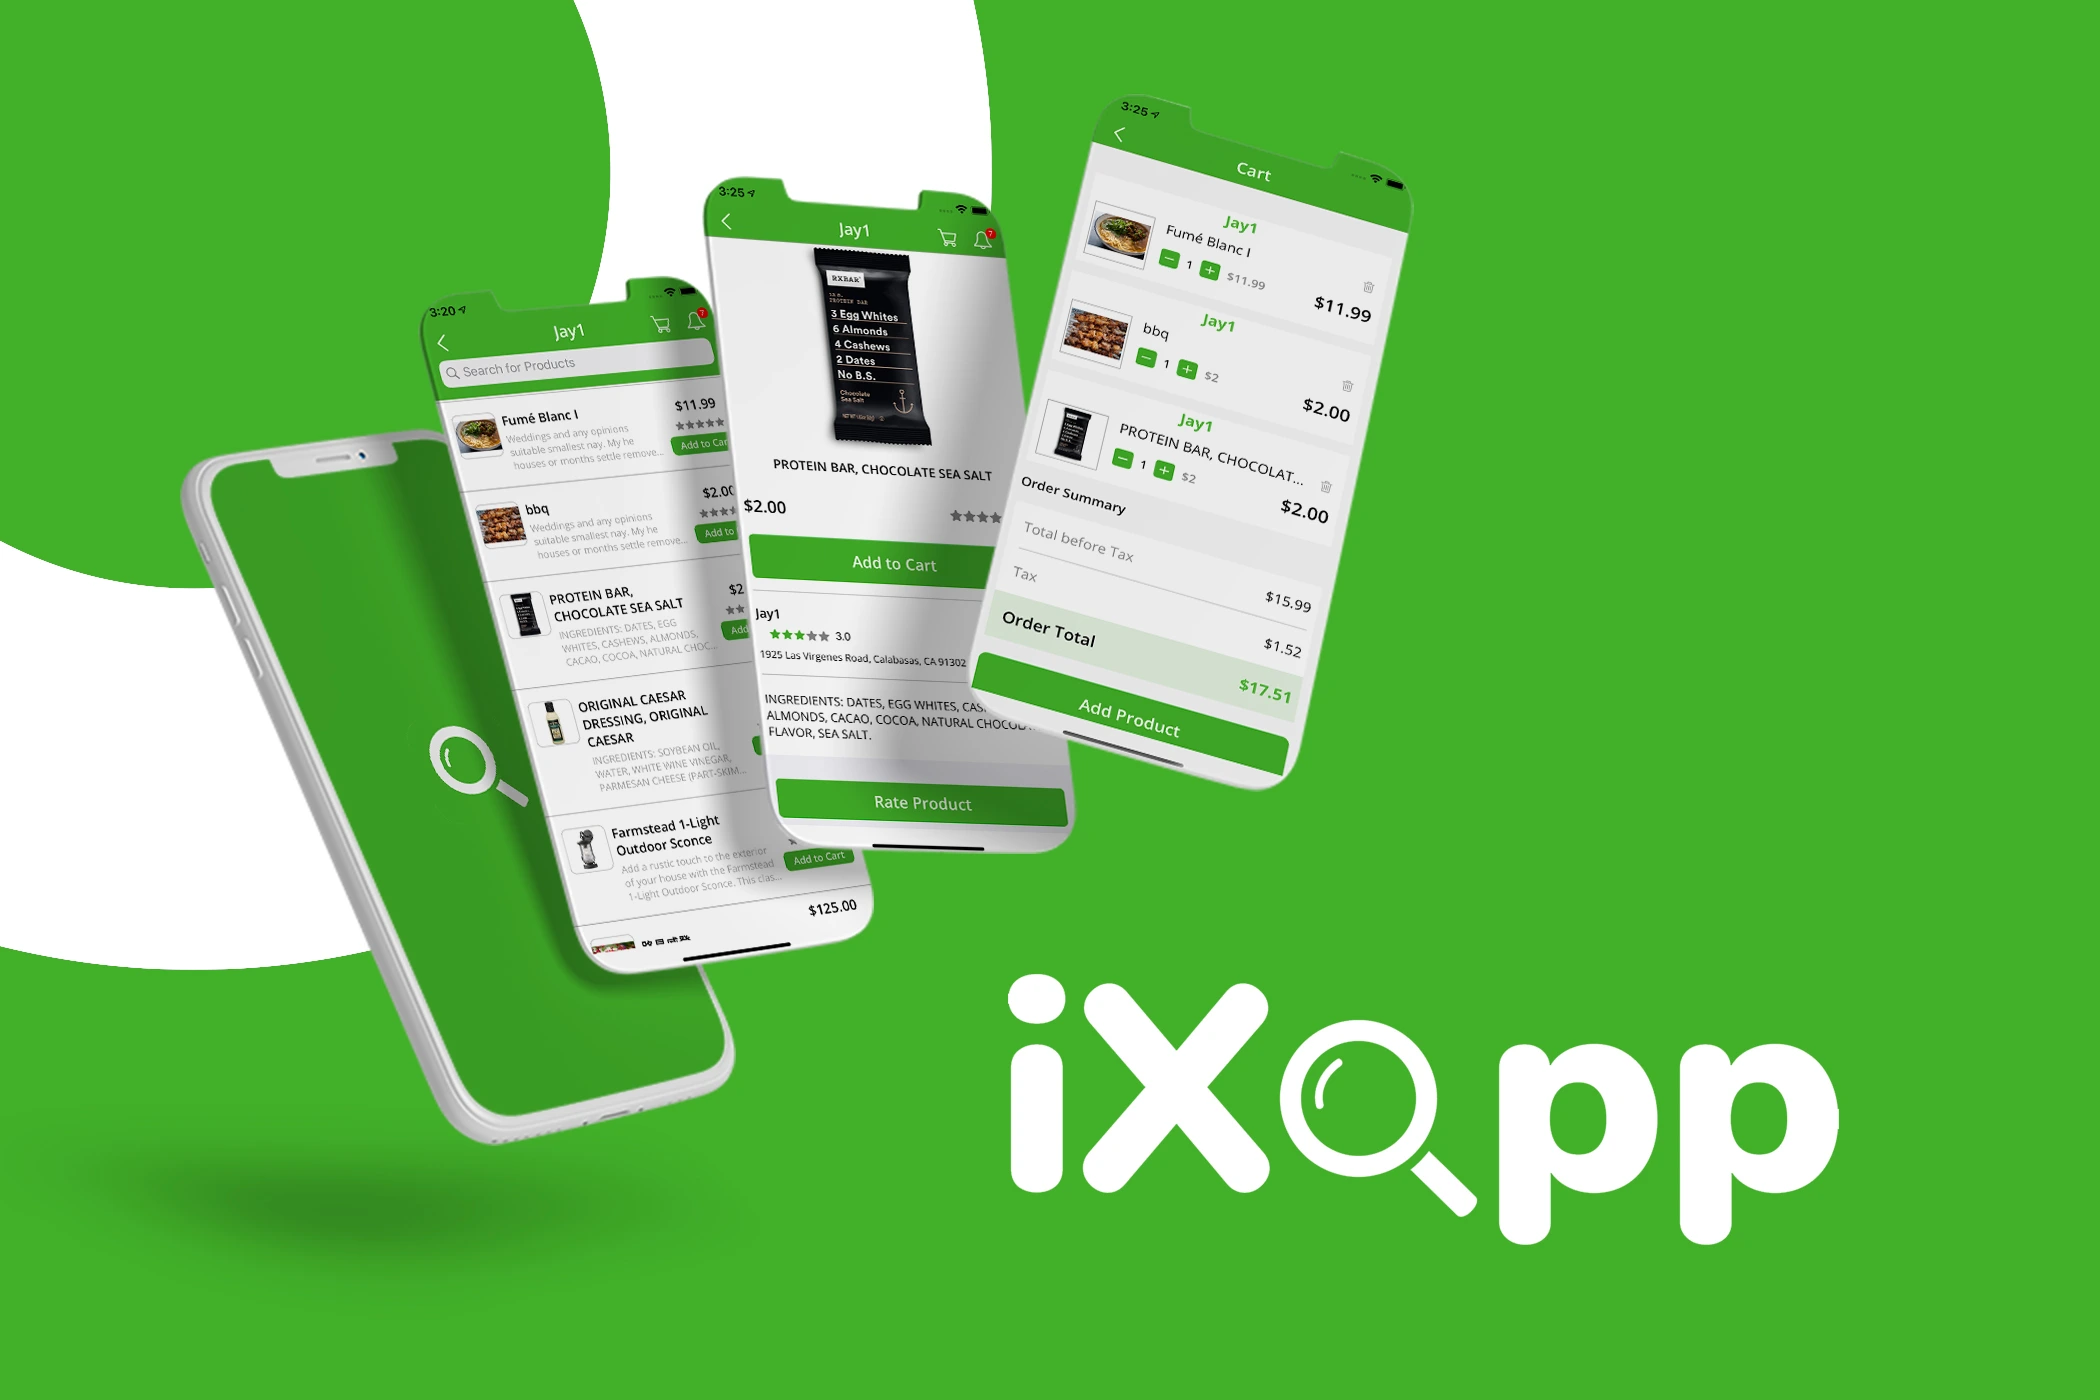 iXopp (Groceries App)